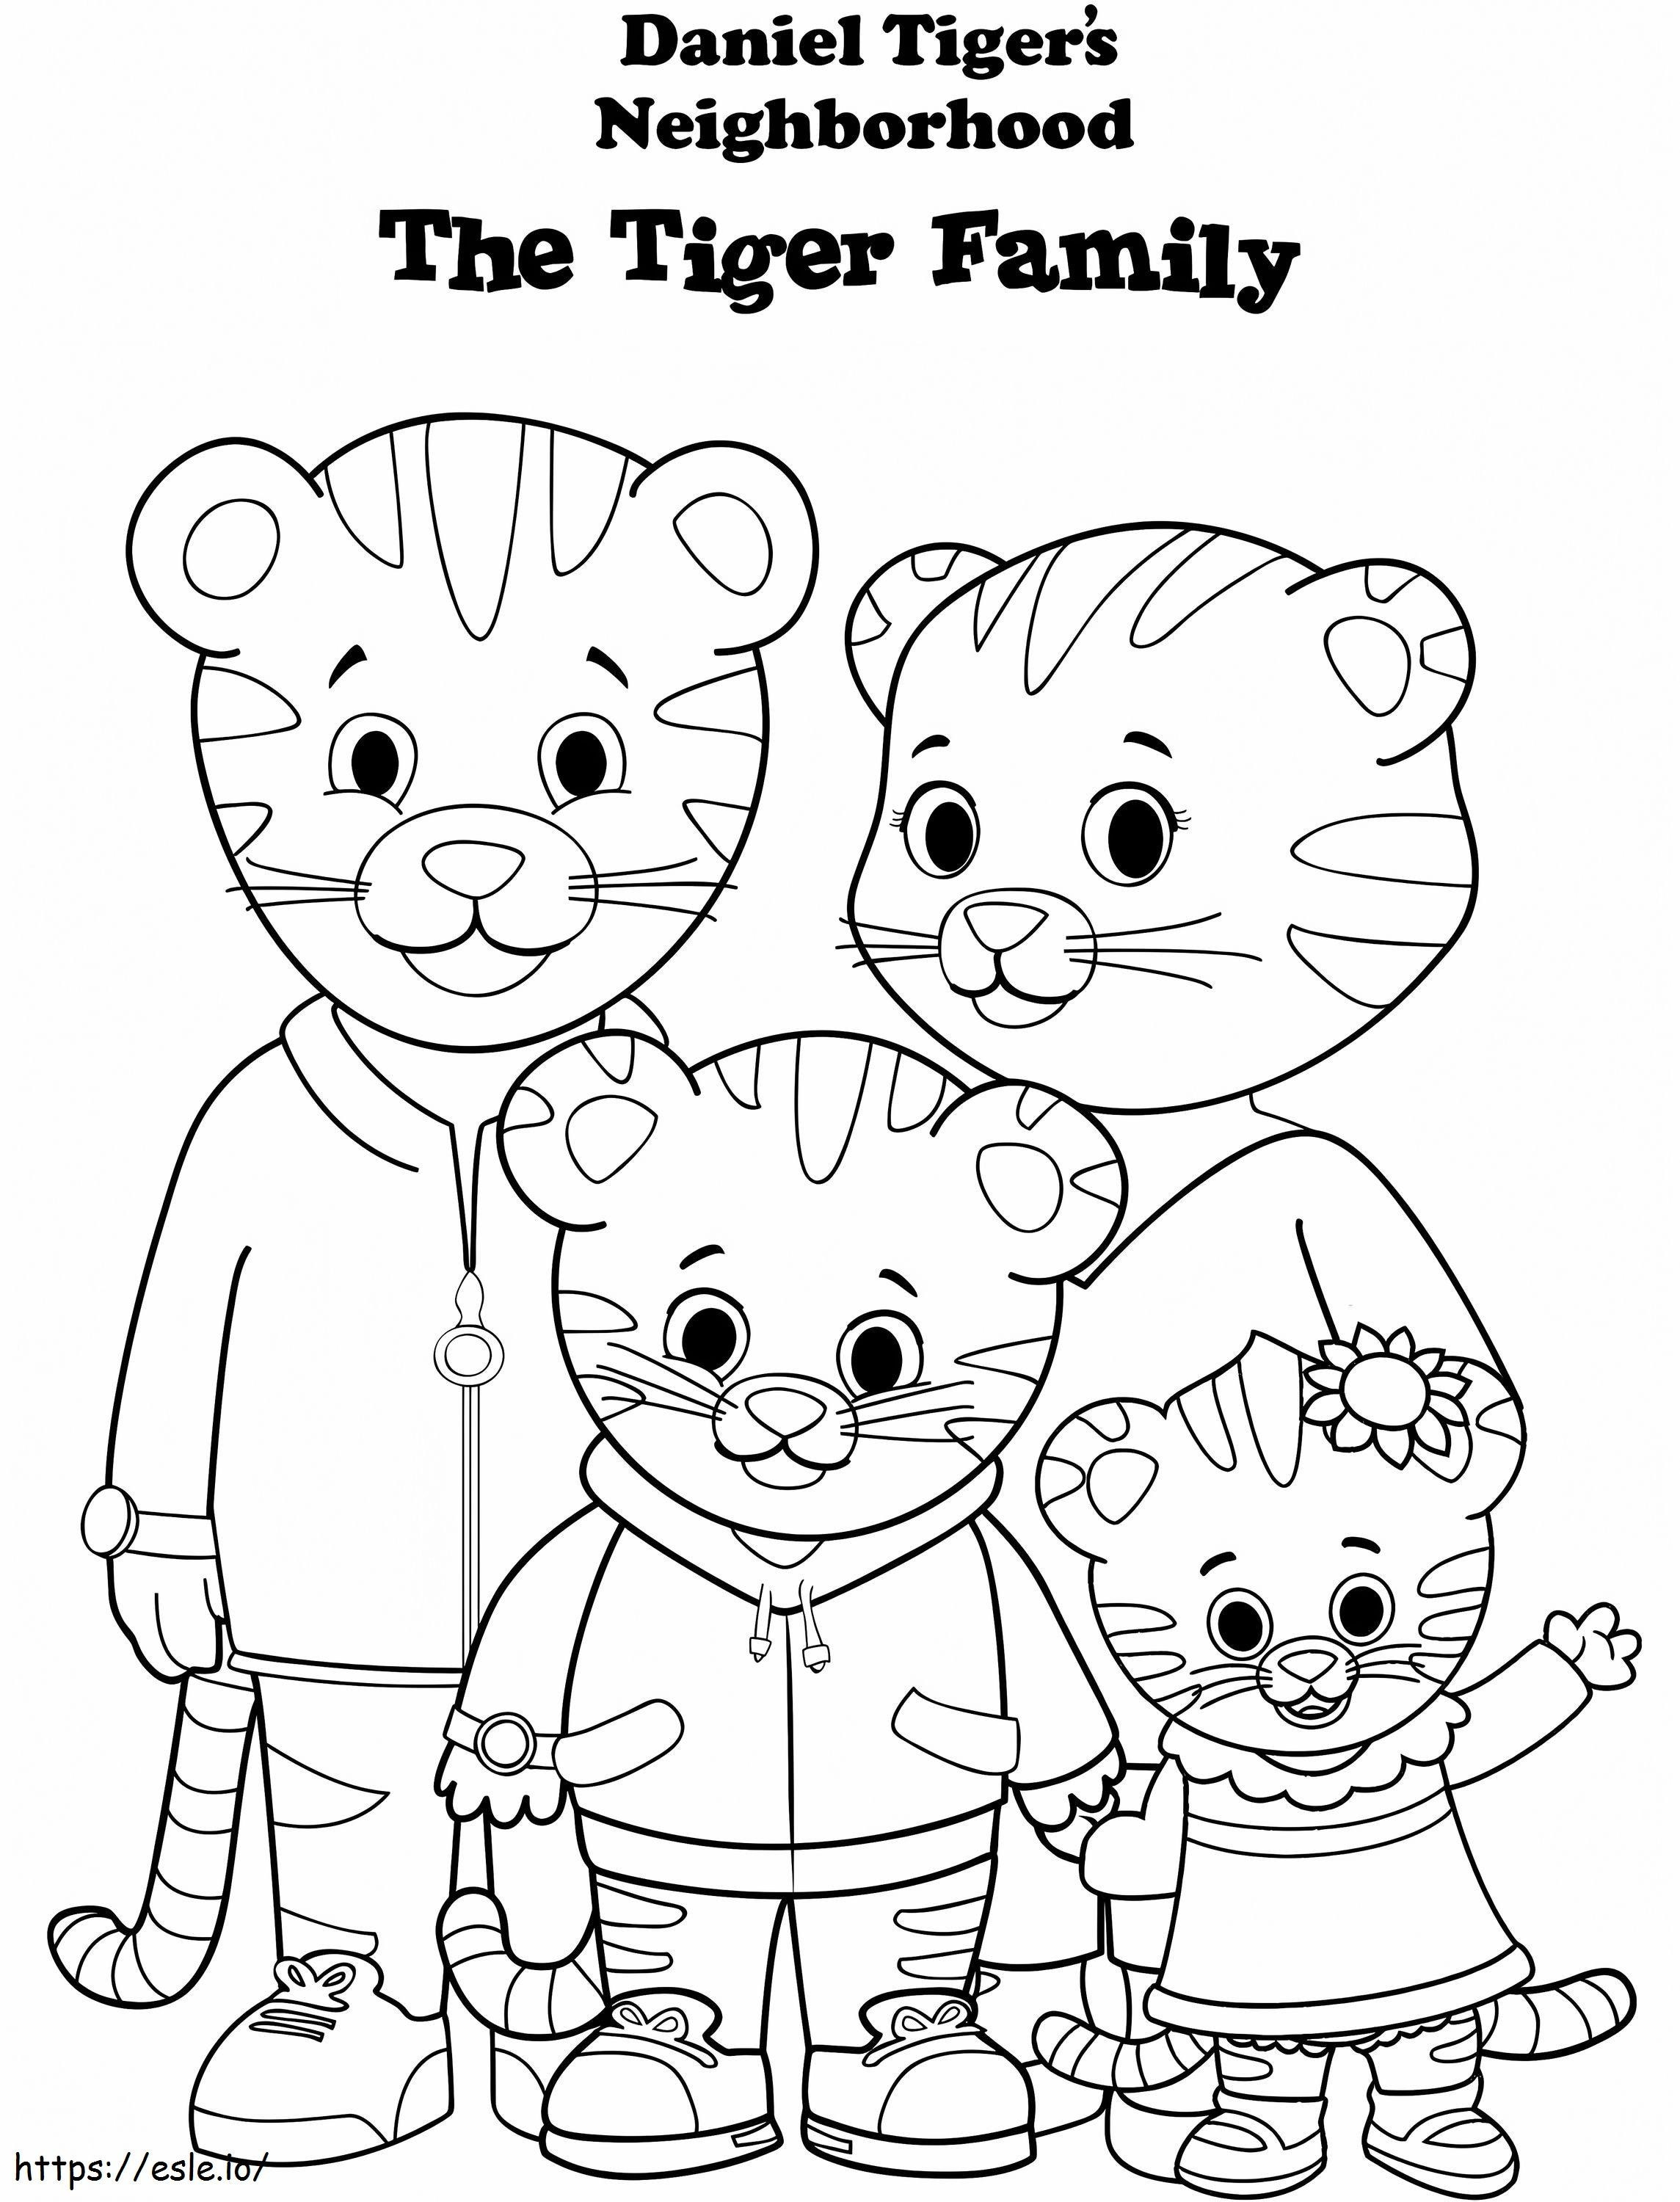 1570118145 Famiglia Daniel Tiger A4 da colorare